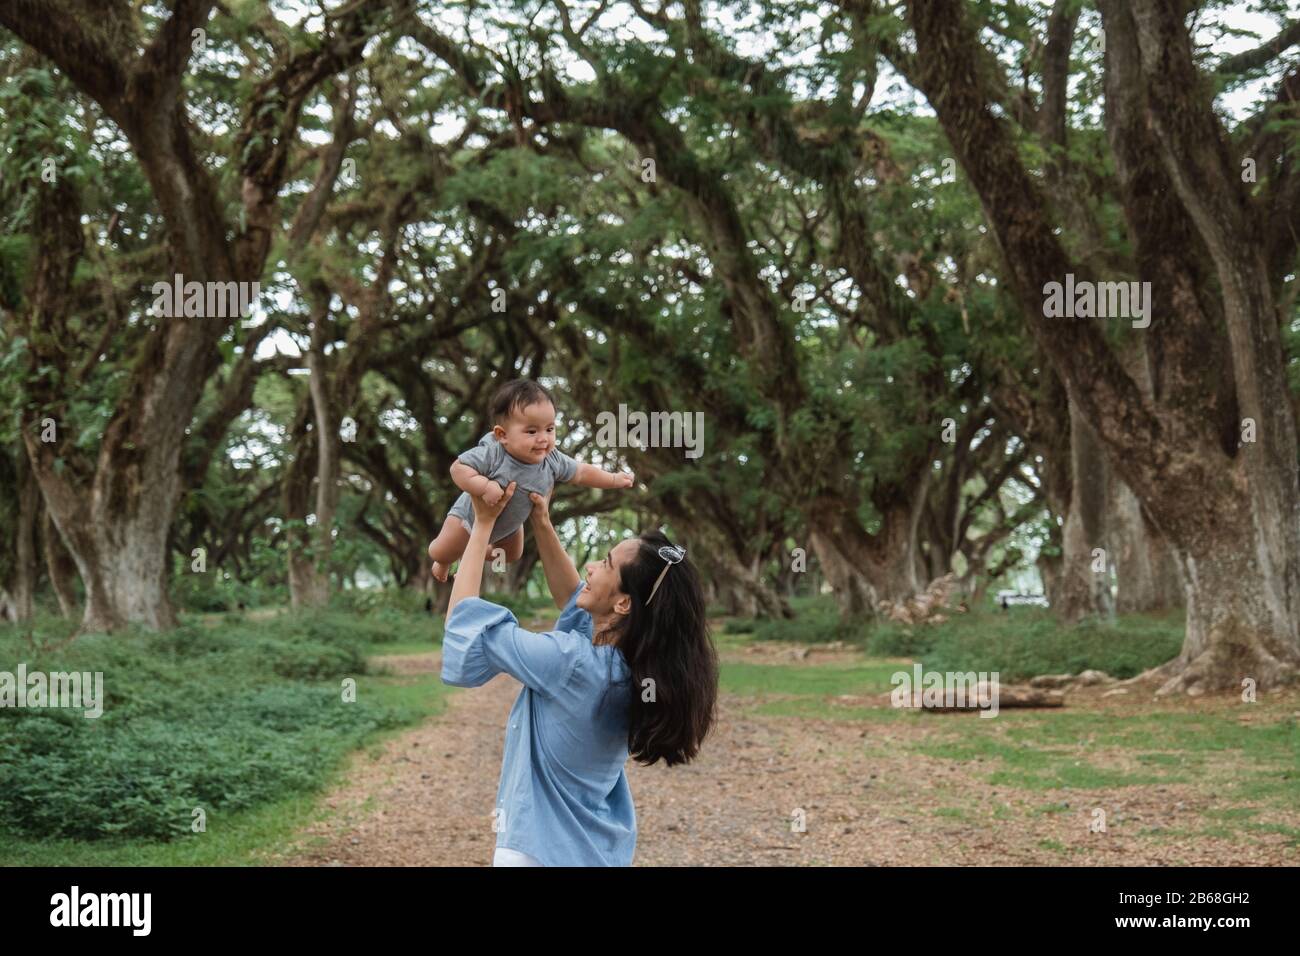 Mutter lacht, während sie ein Baby festhält, während sie gemeinsam Urlaub macht Stockfoto